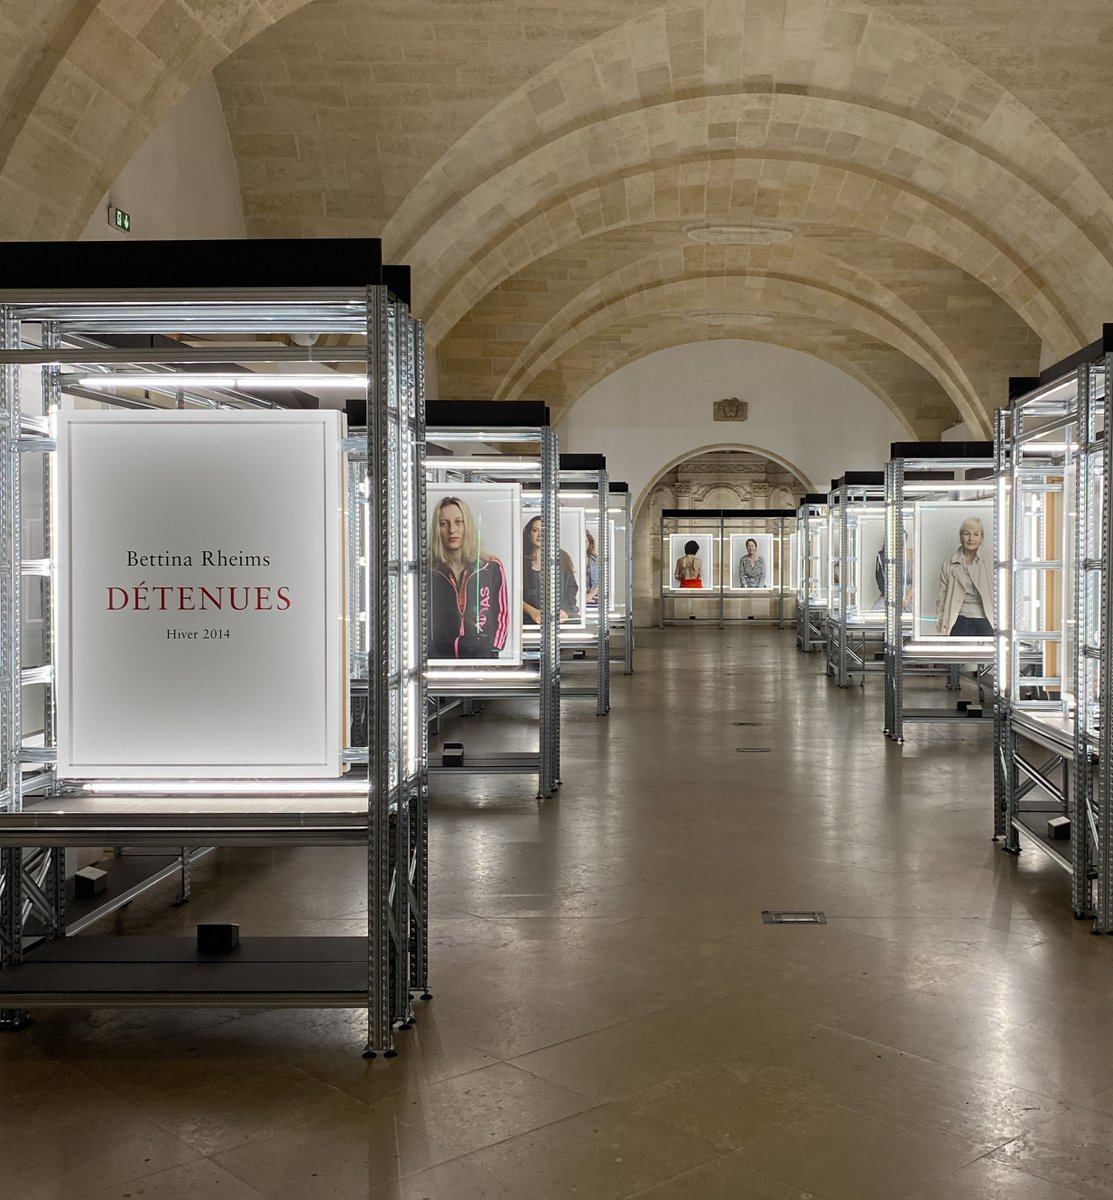 🟦#Exposition 'Détenues' de Bettina Rheims organisée par le #madd_bordeaux 🟥Visible jusqu'au 12 mai 📍Salle capitulaire Mably #Bordeaux madd-bordeaux.fr/expositions/de… 🟦